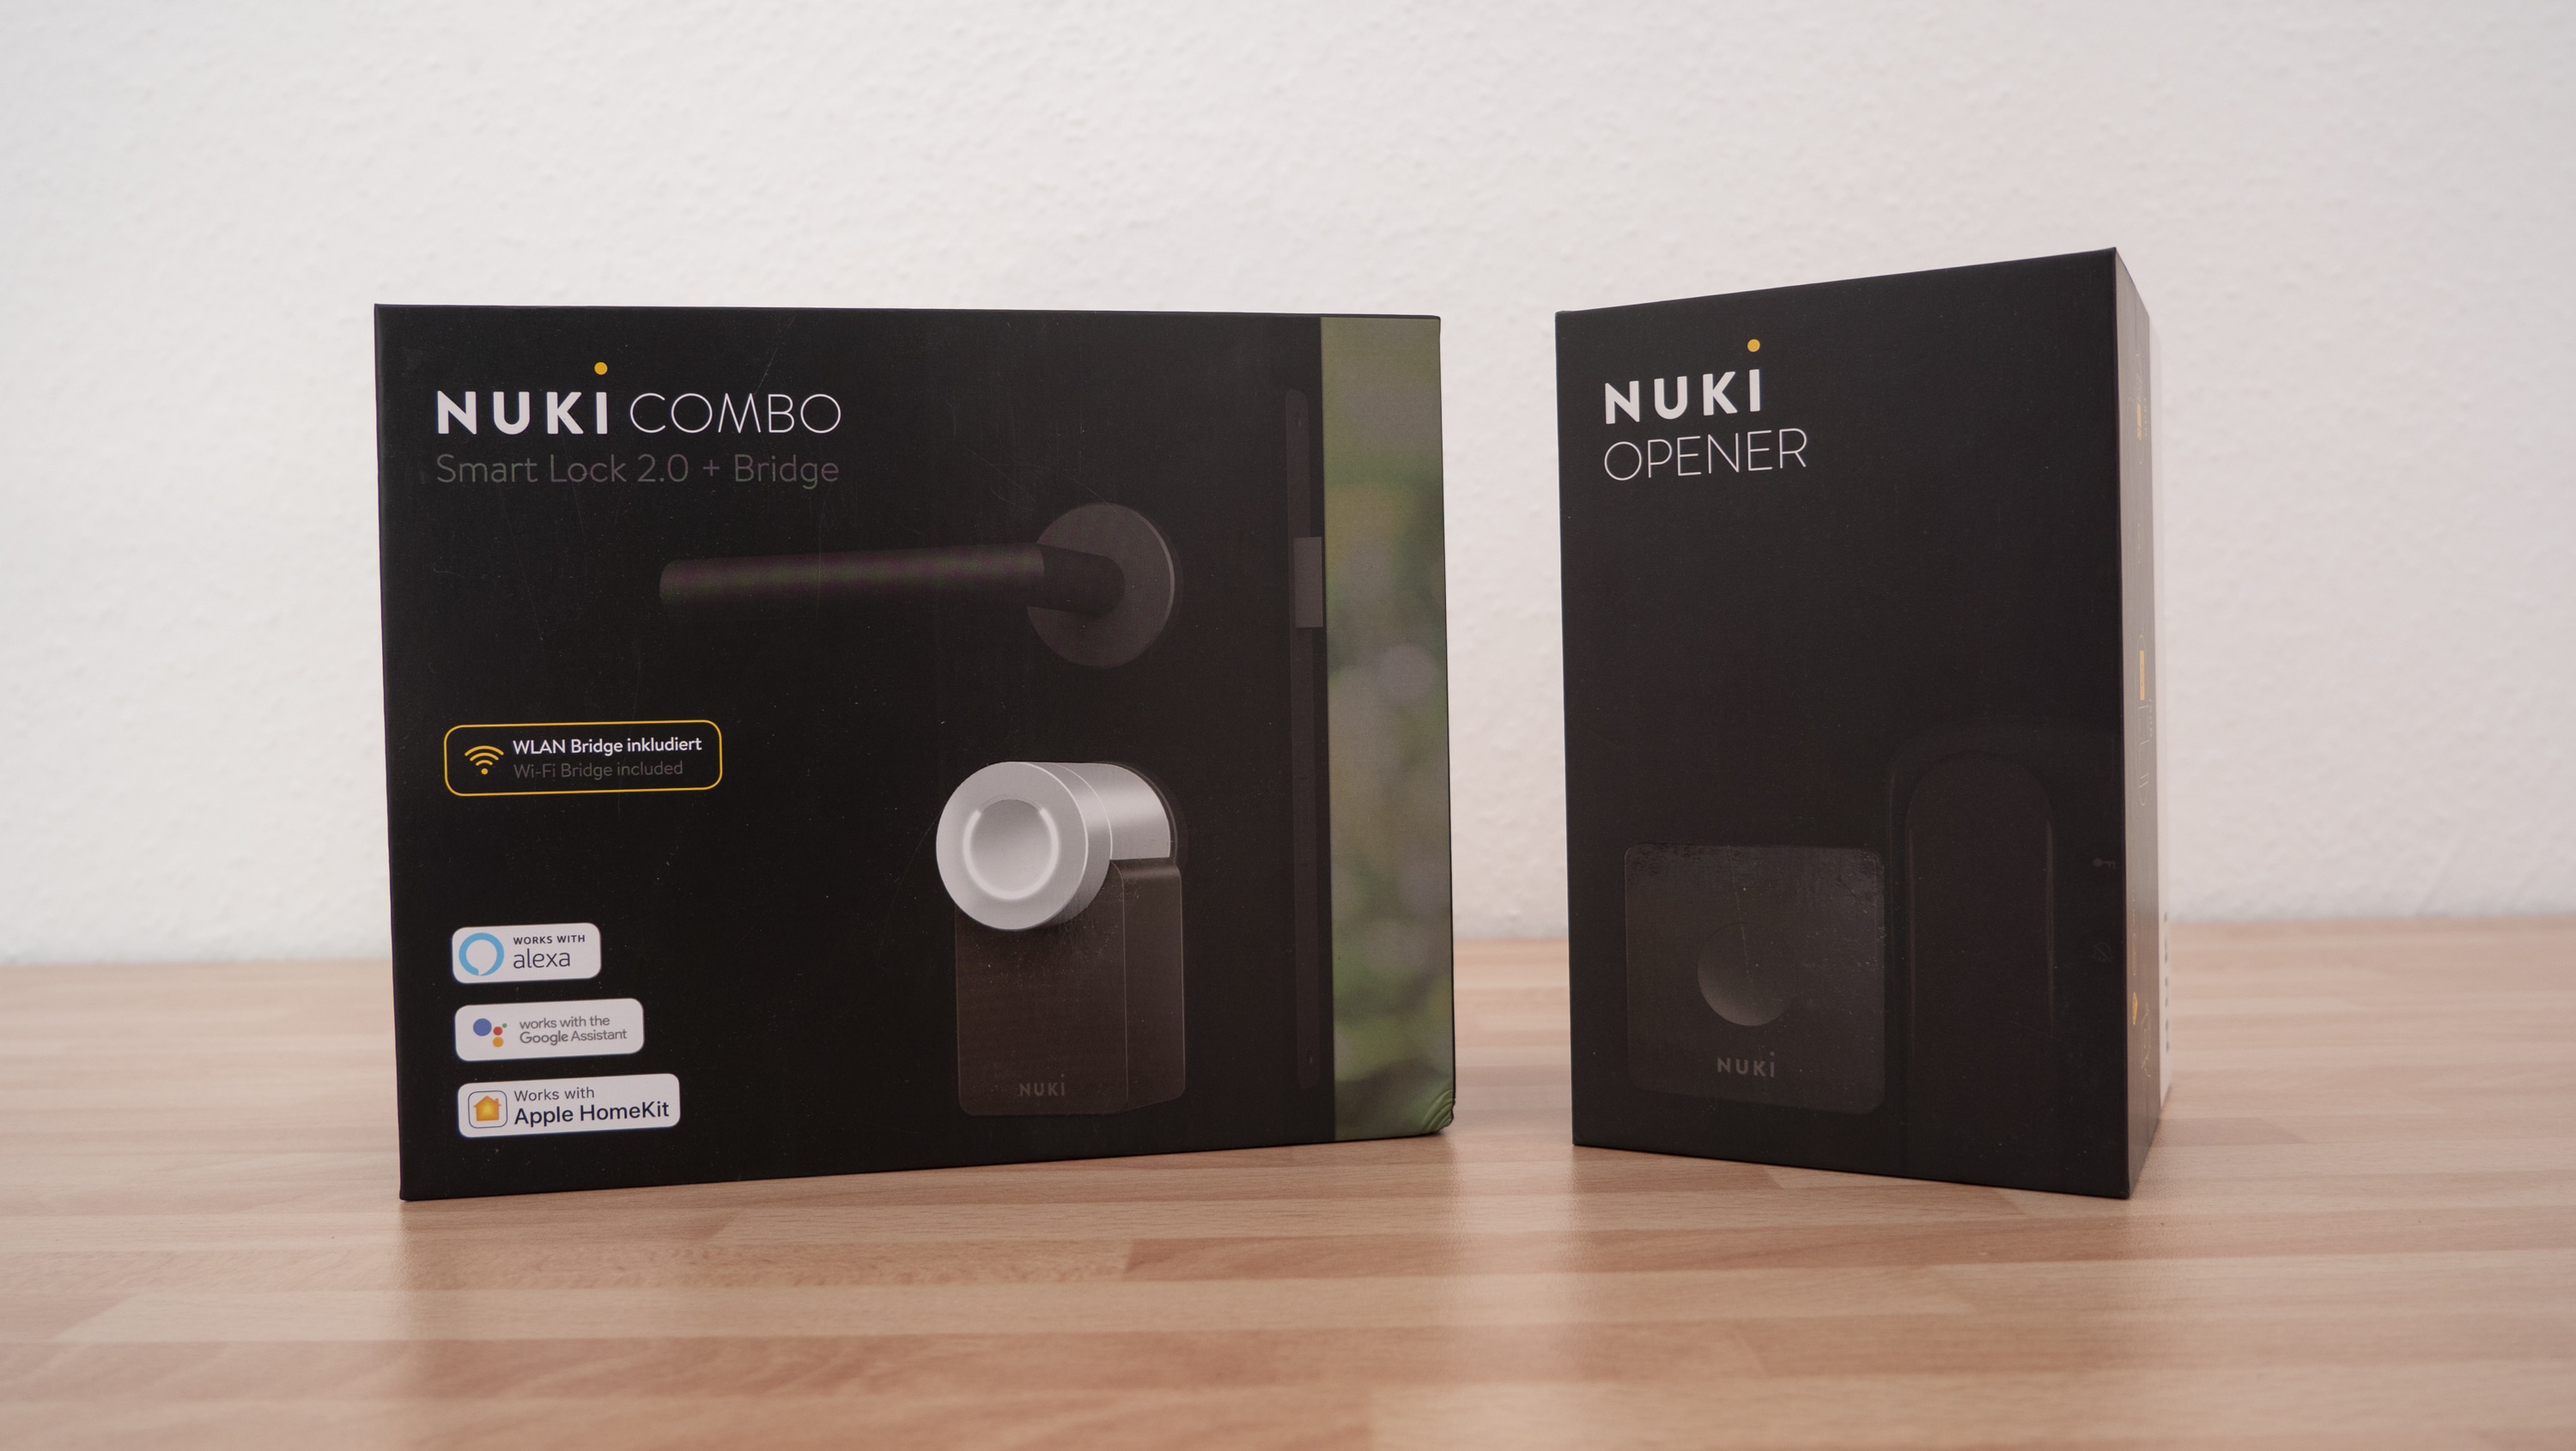 Nuki Opener Combo in test - how well does the smart door opener work?